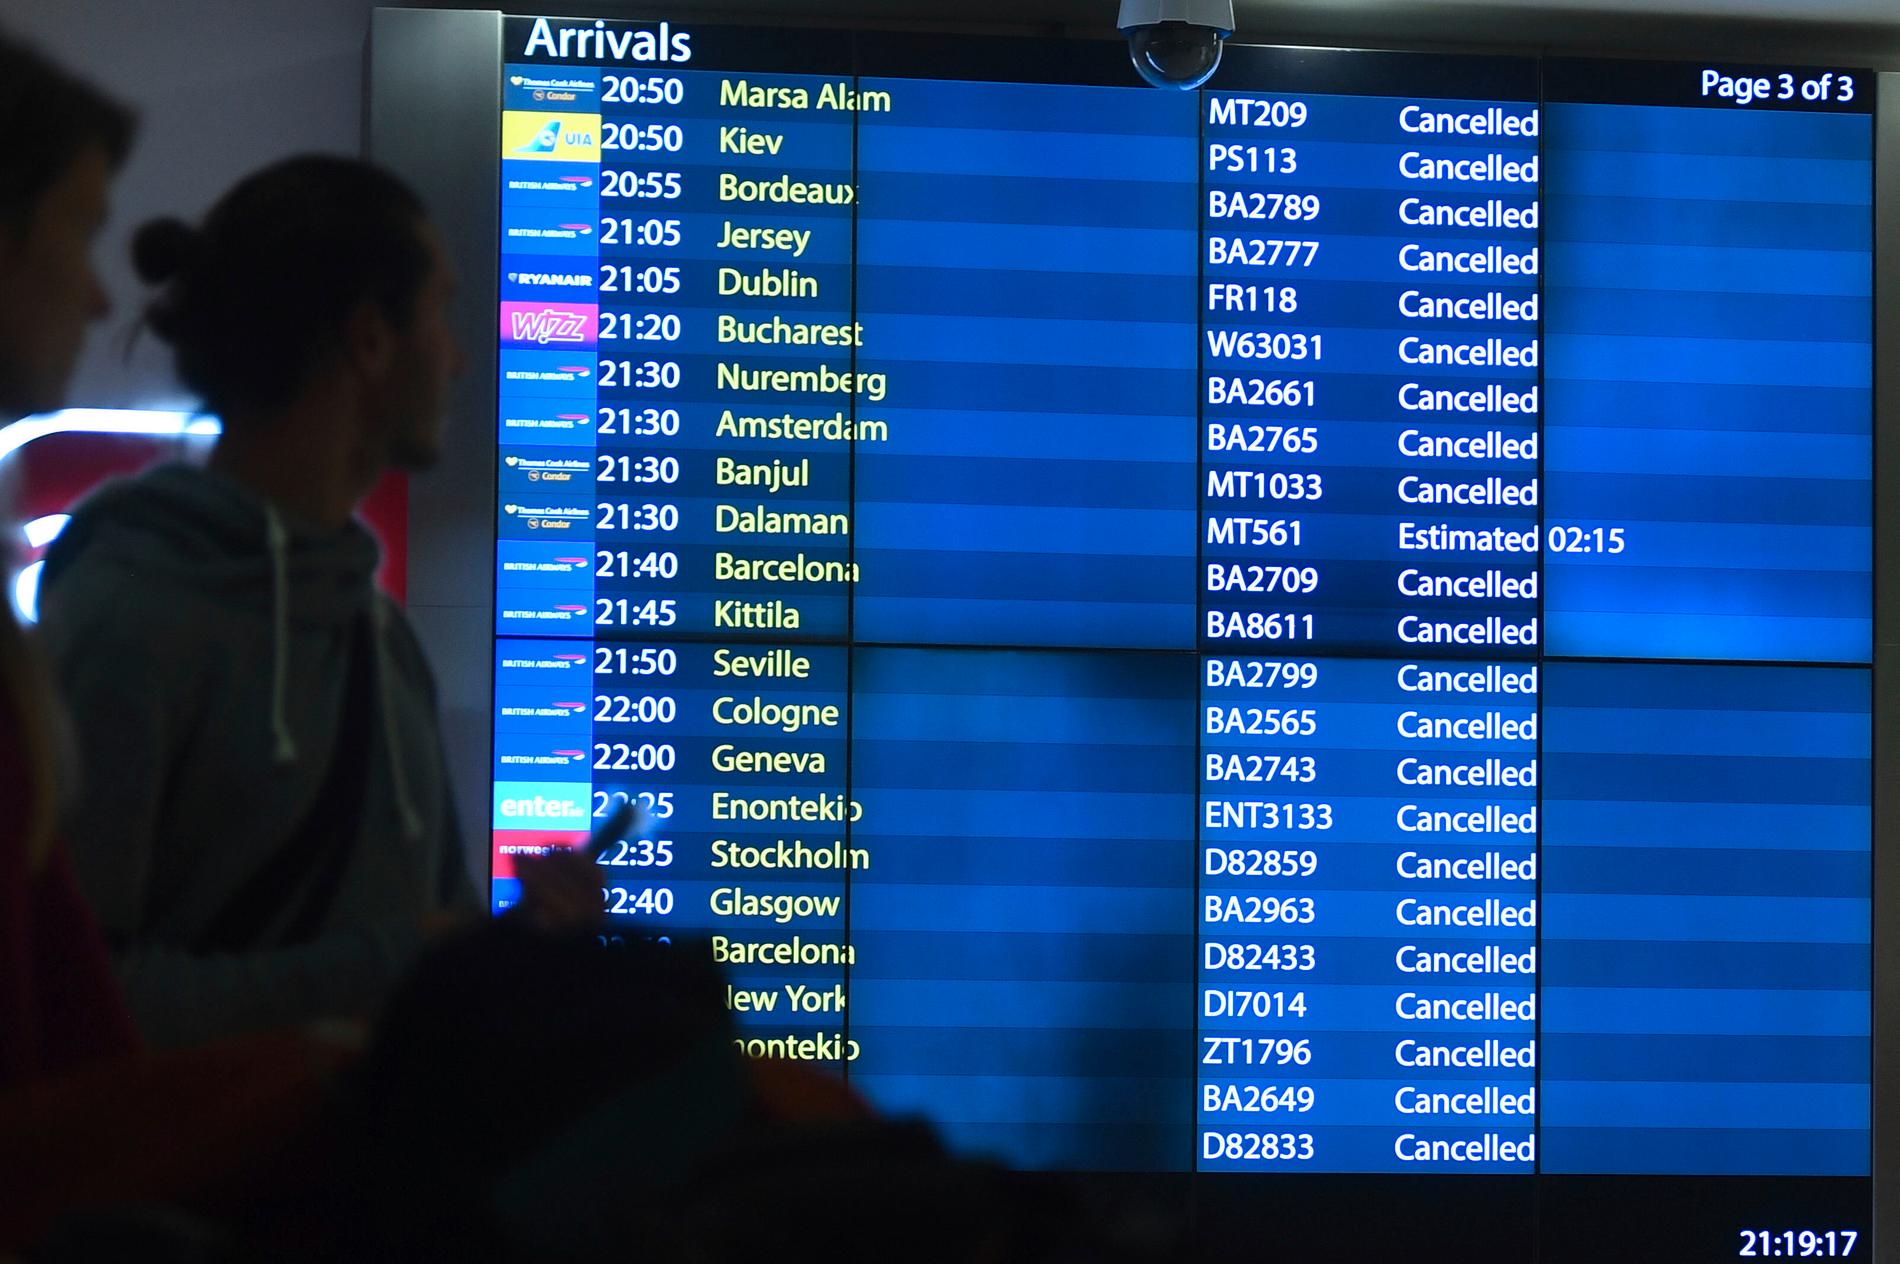 Londonflygplatsen Gatwick i London tvingades ställa in flygtrafiken i december sedan obemannade flygfarkoster siktats över flygplatsen. Arkivbild.